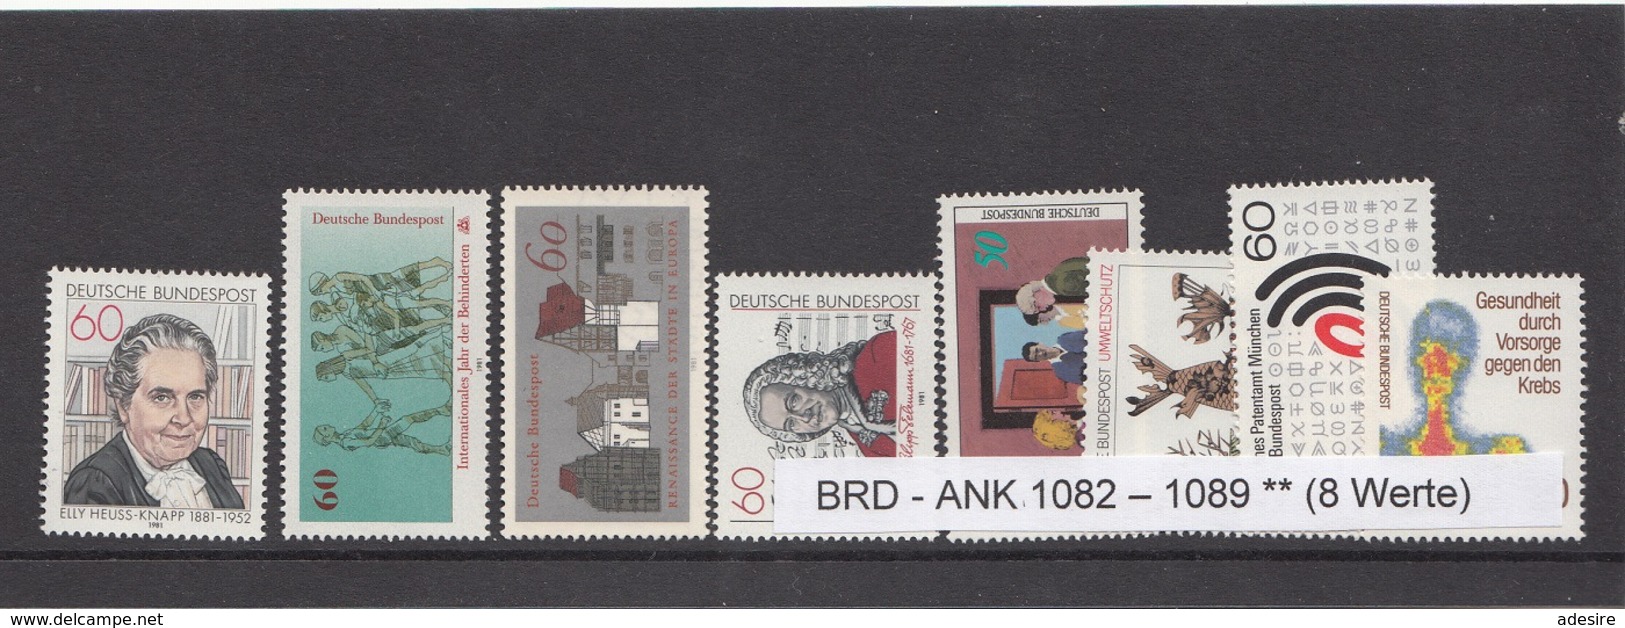 Lot Briefmarken BRD 1981 ** Ank1082 - 1089 (8 Werte) - Ungebraucht